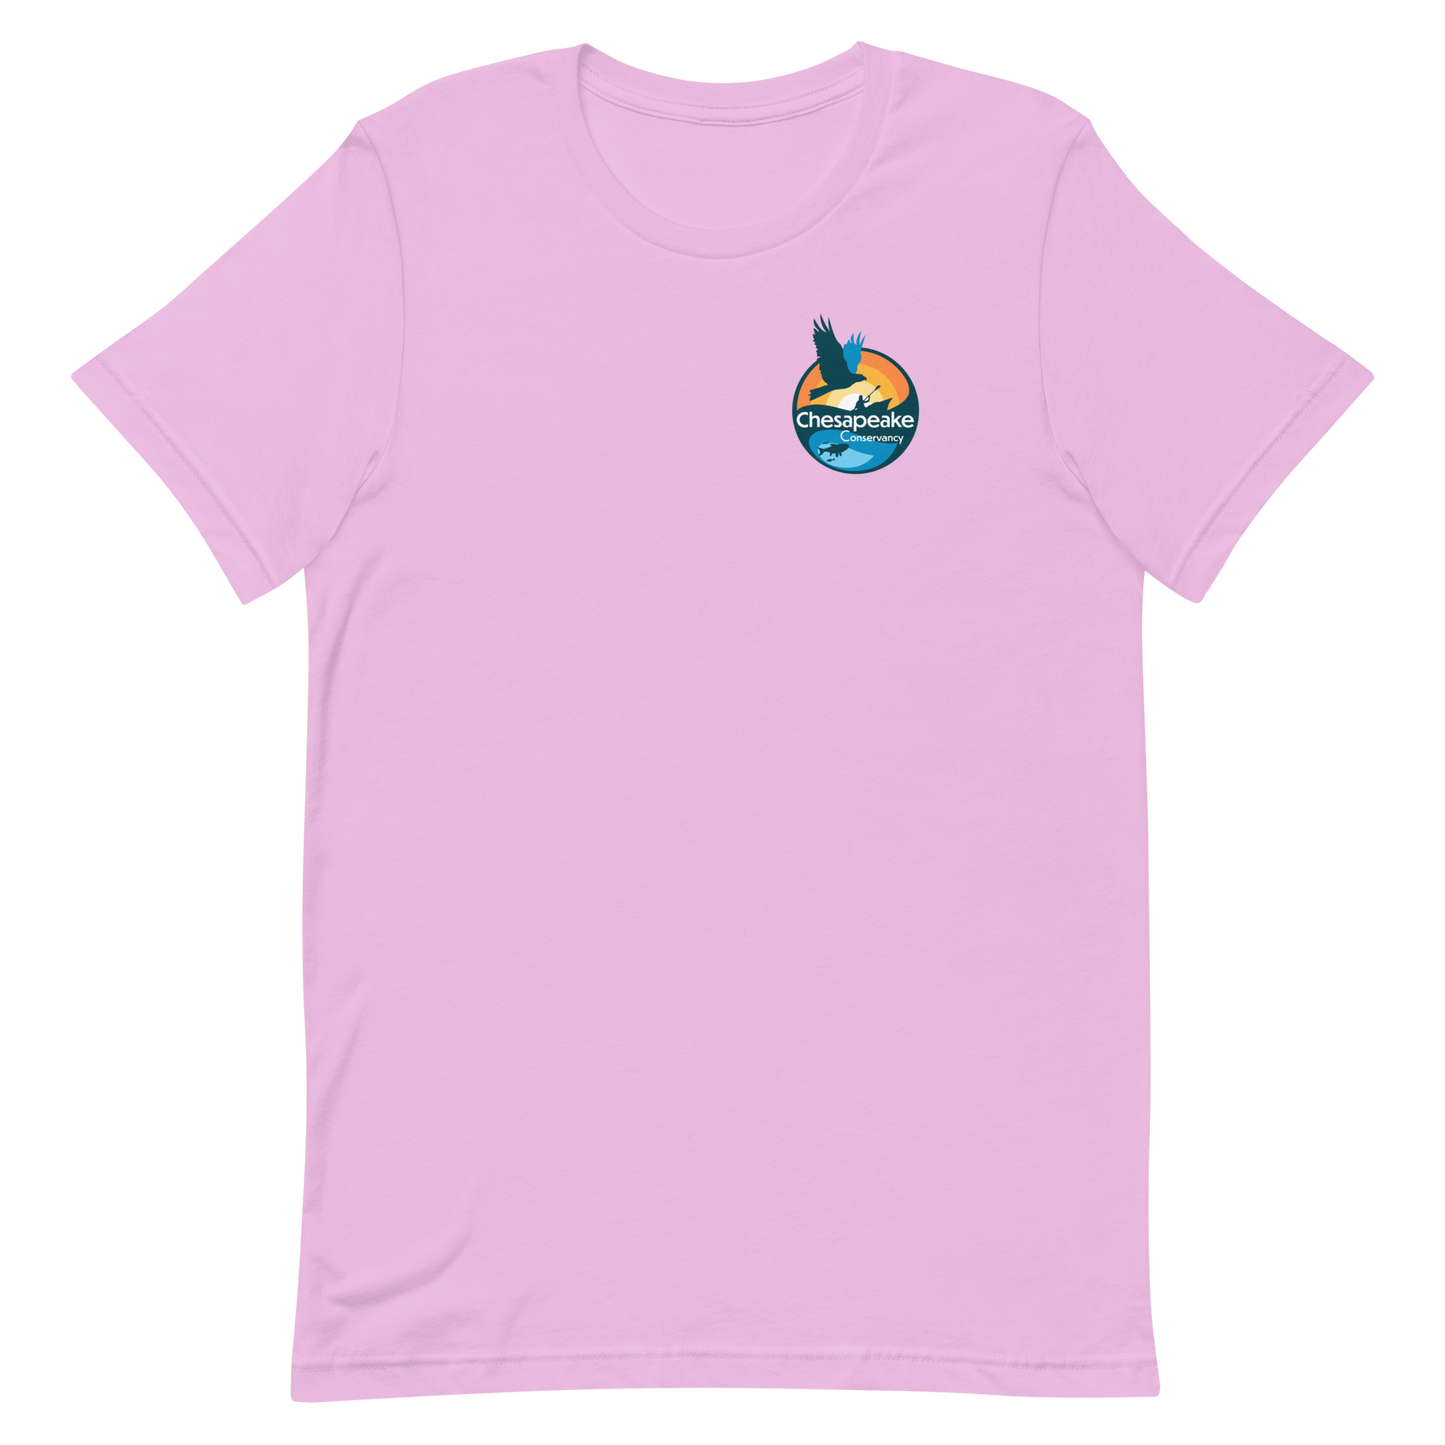 Mallows Bay - Unisex T-shirt